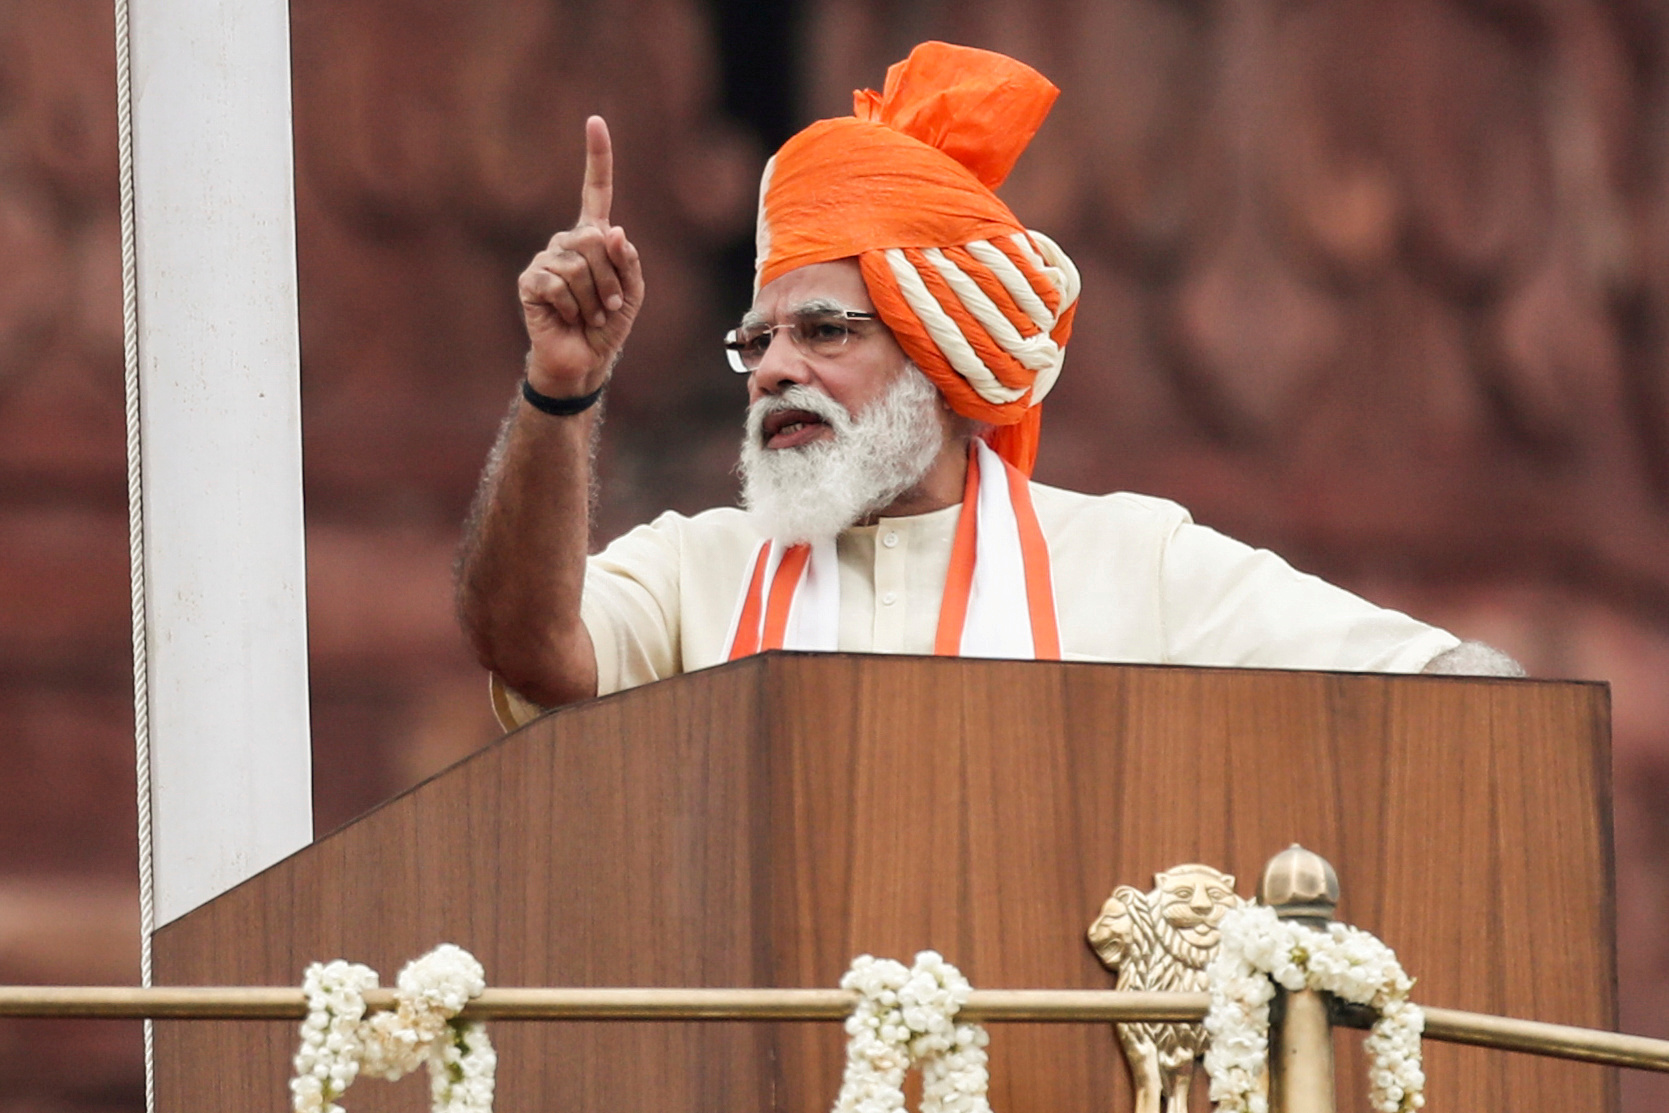 El primer ministro Narendra Modi se dirige a la nación durante las celebraciones del Día de la Independencia en el histórico Fuerte Rojo de Nueva Delhi, el 15 de agosto de 2020 (REUTERS/Adnan Abidi/File Photo)